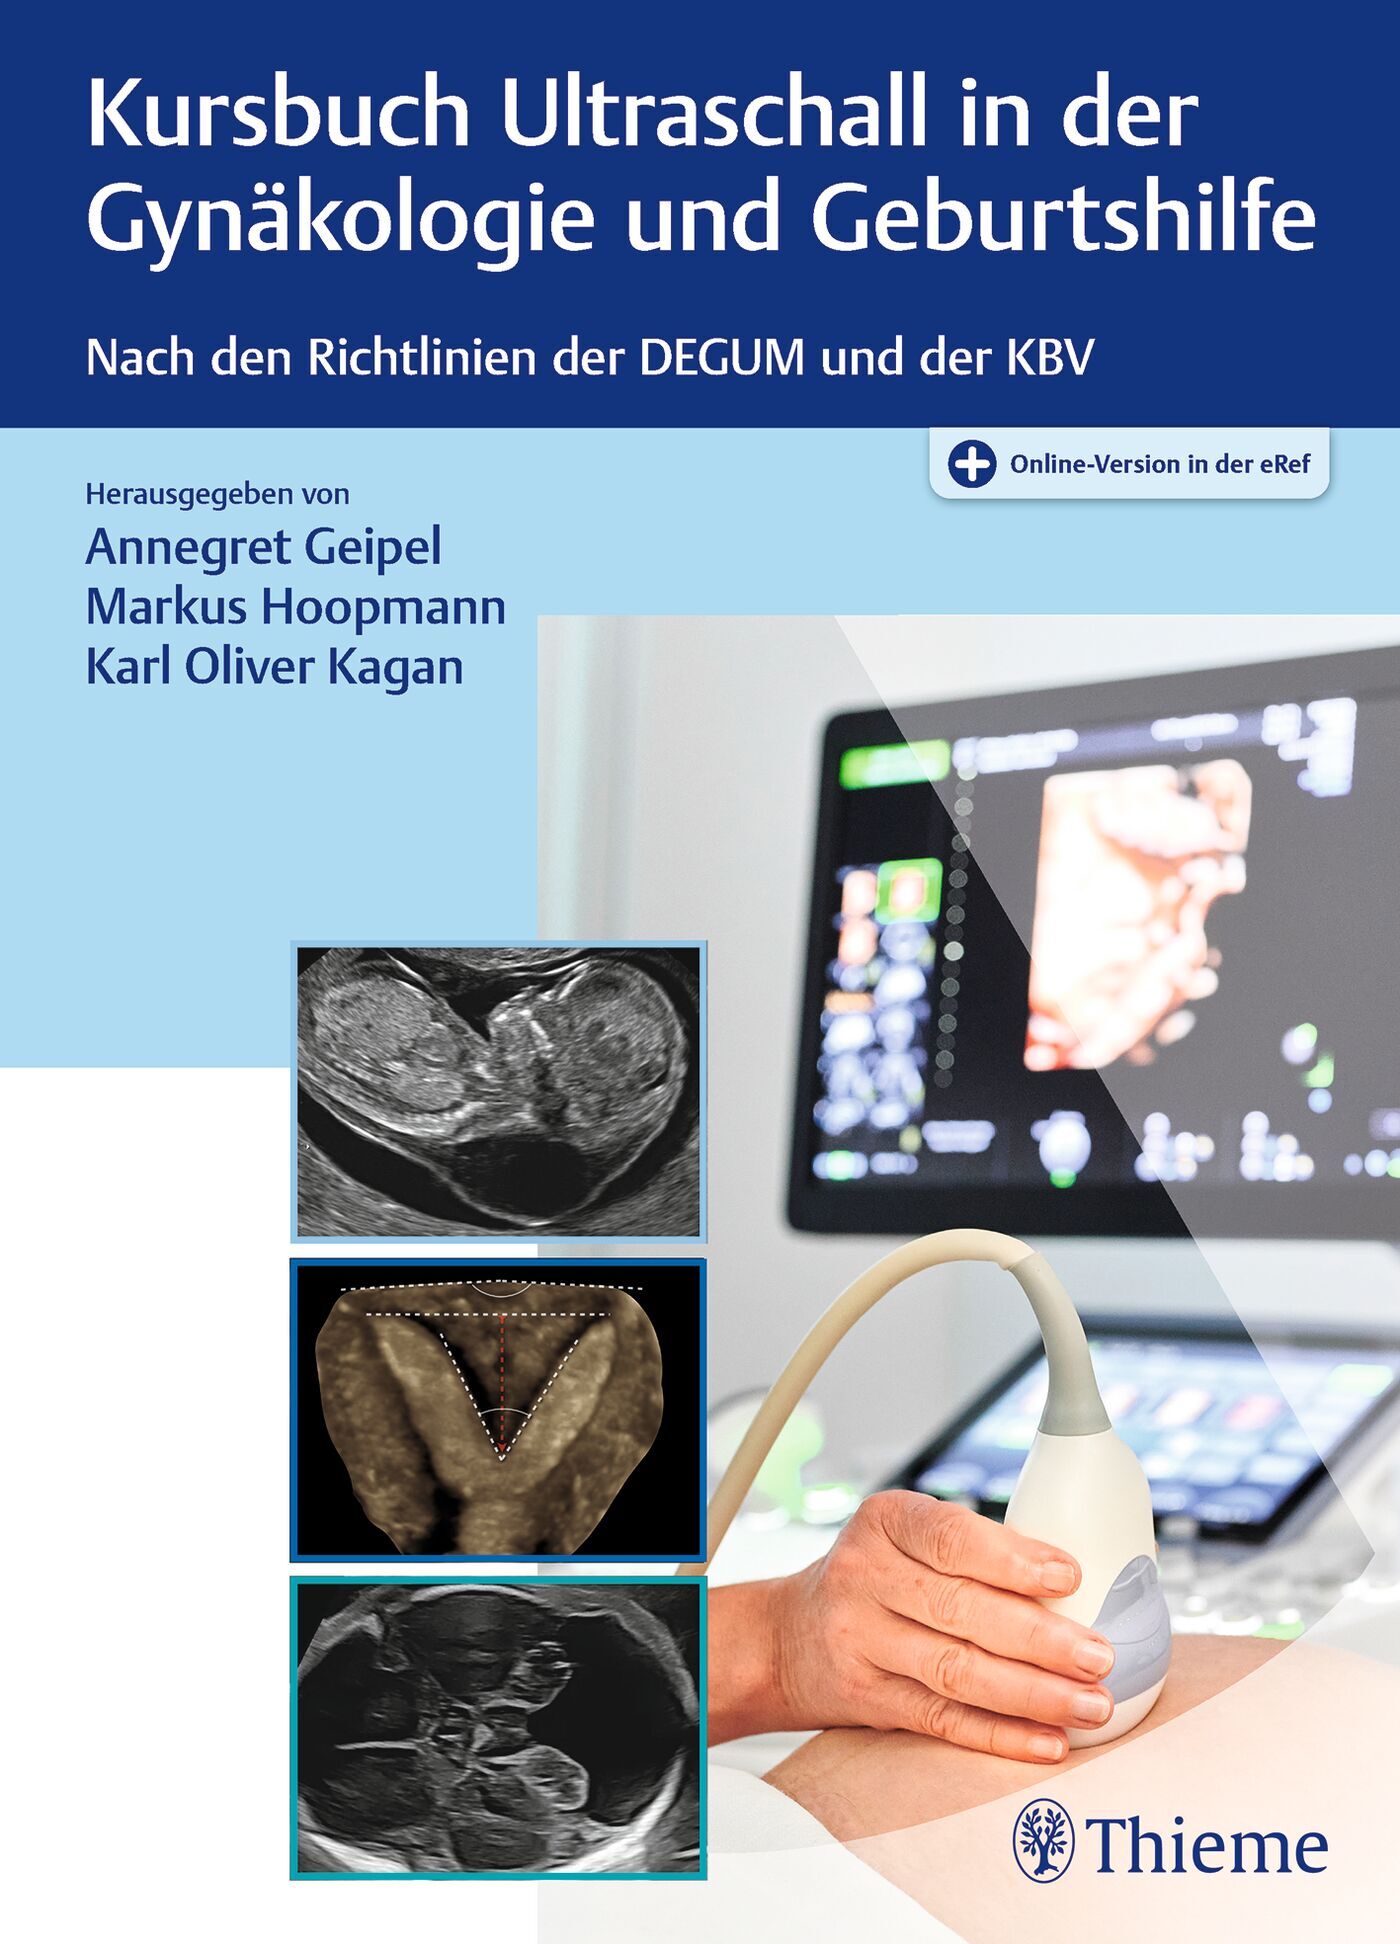 Kursbuch Ultraschall in der Gynäkologie und Geburtshilfe, 9783132437937